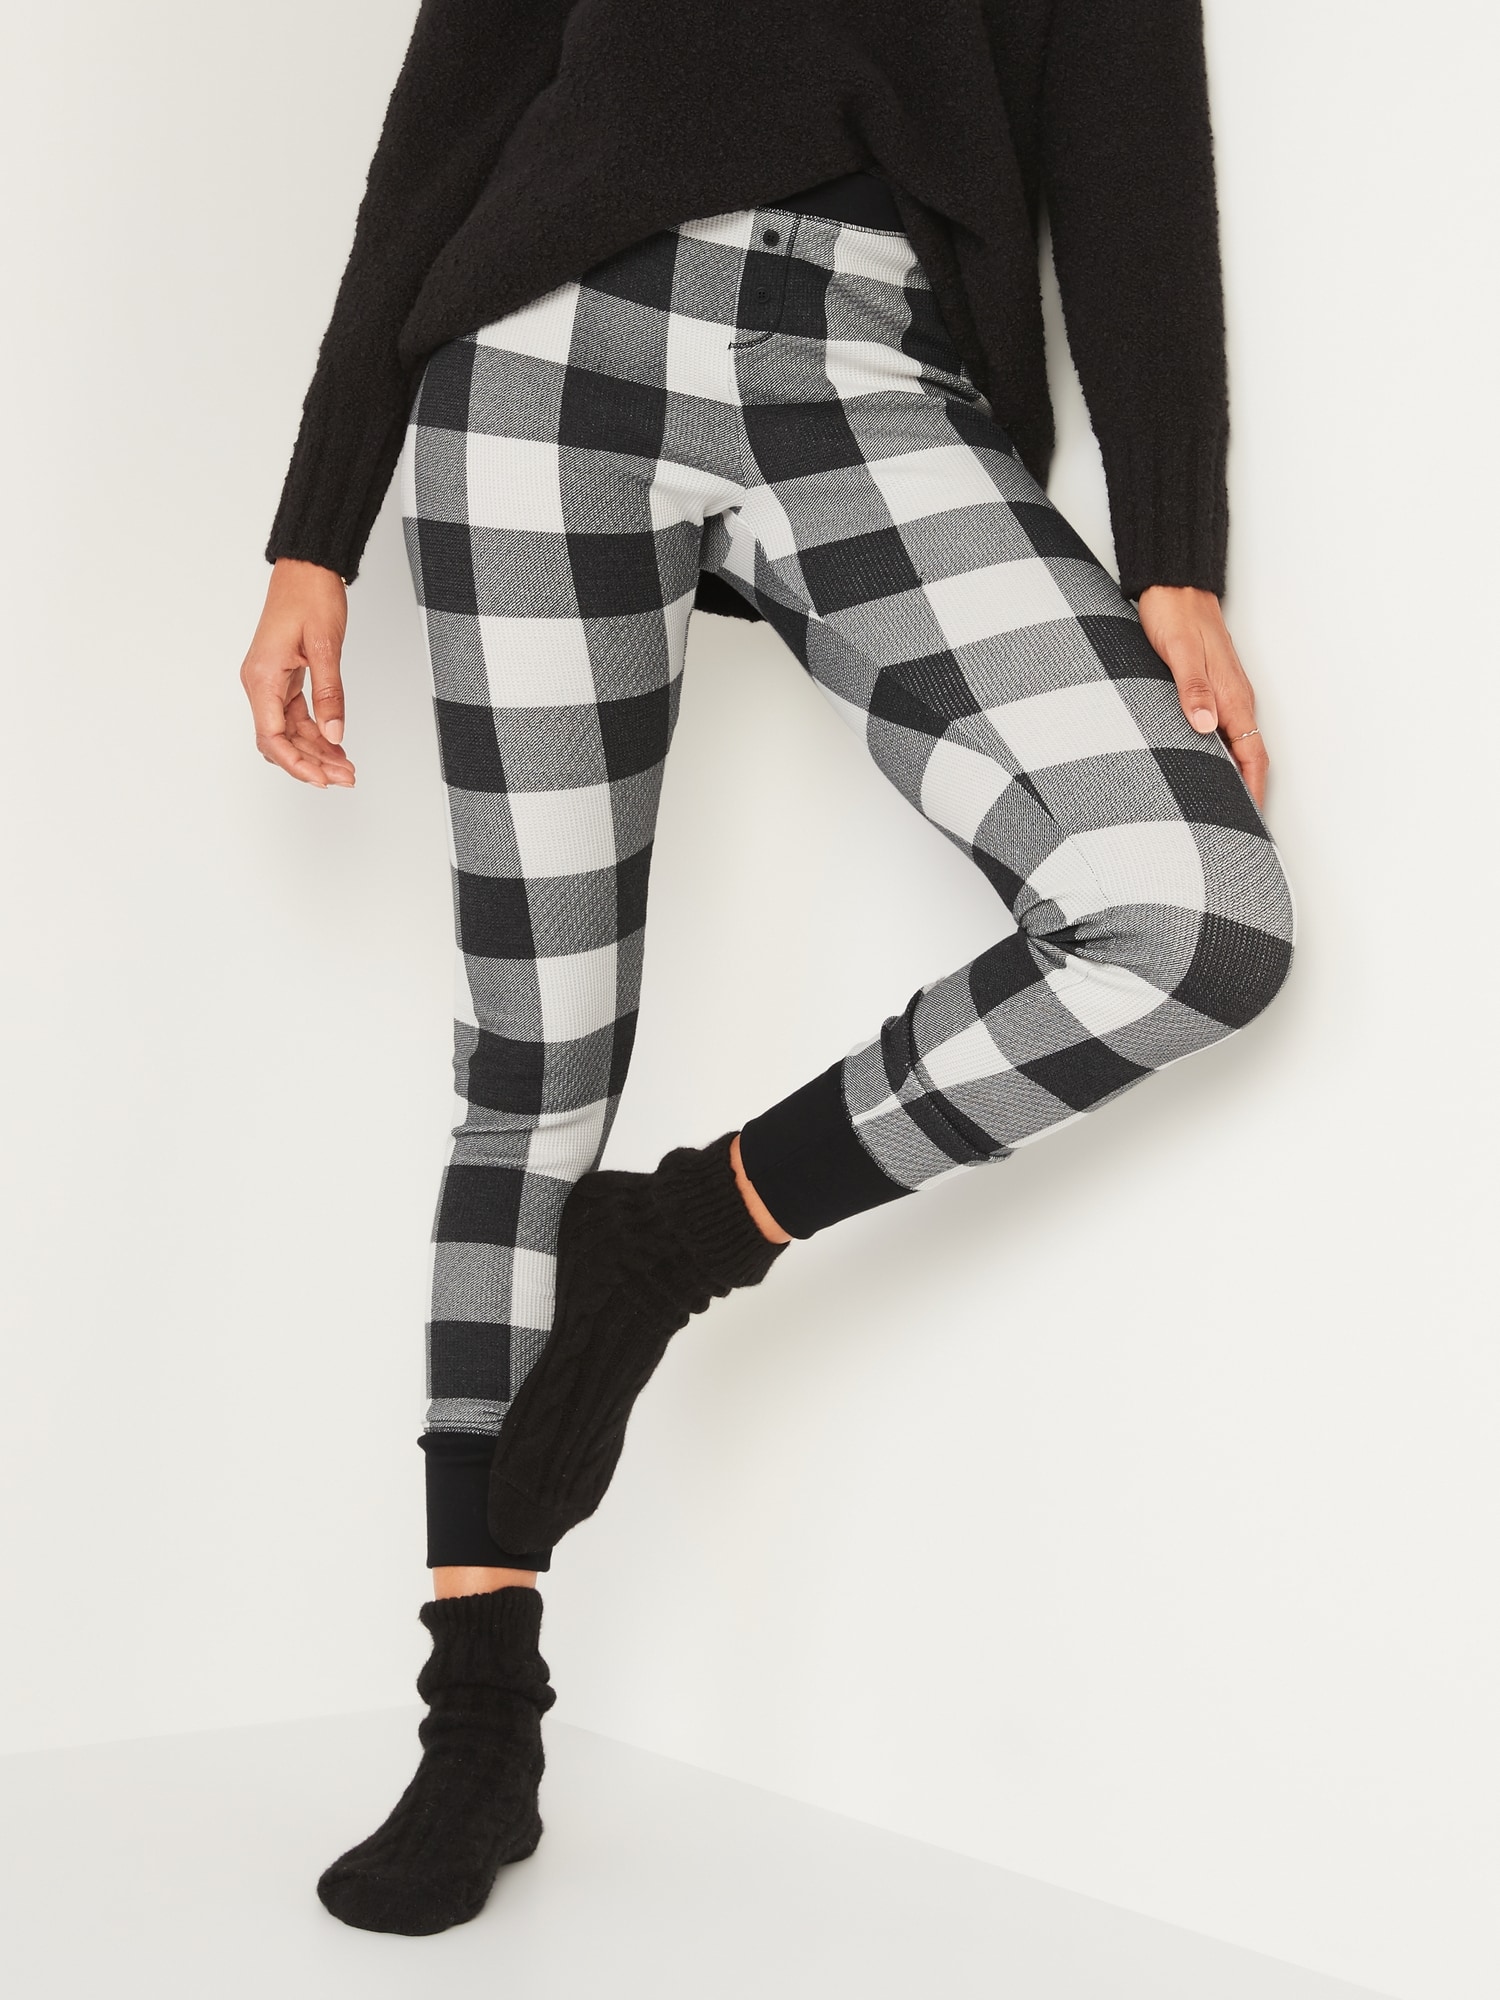 Thermal-Knit Pajama Leggings for Women